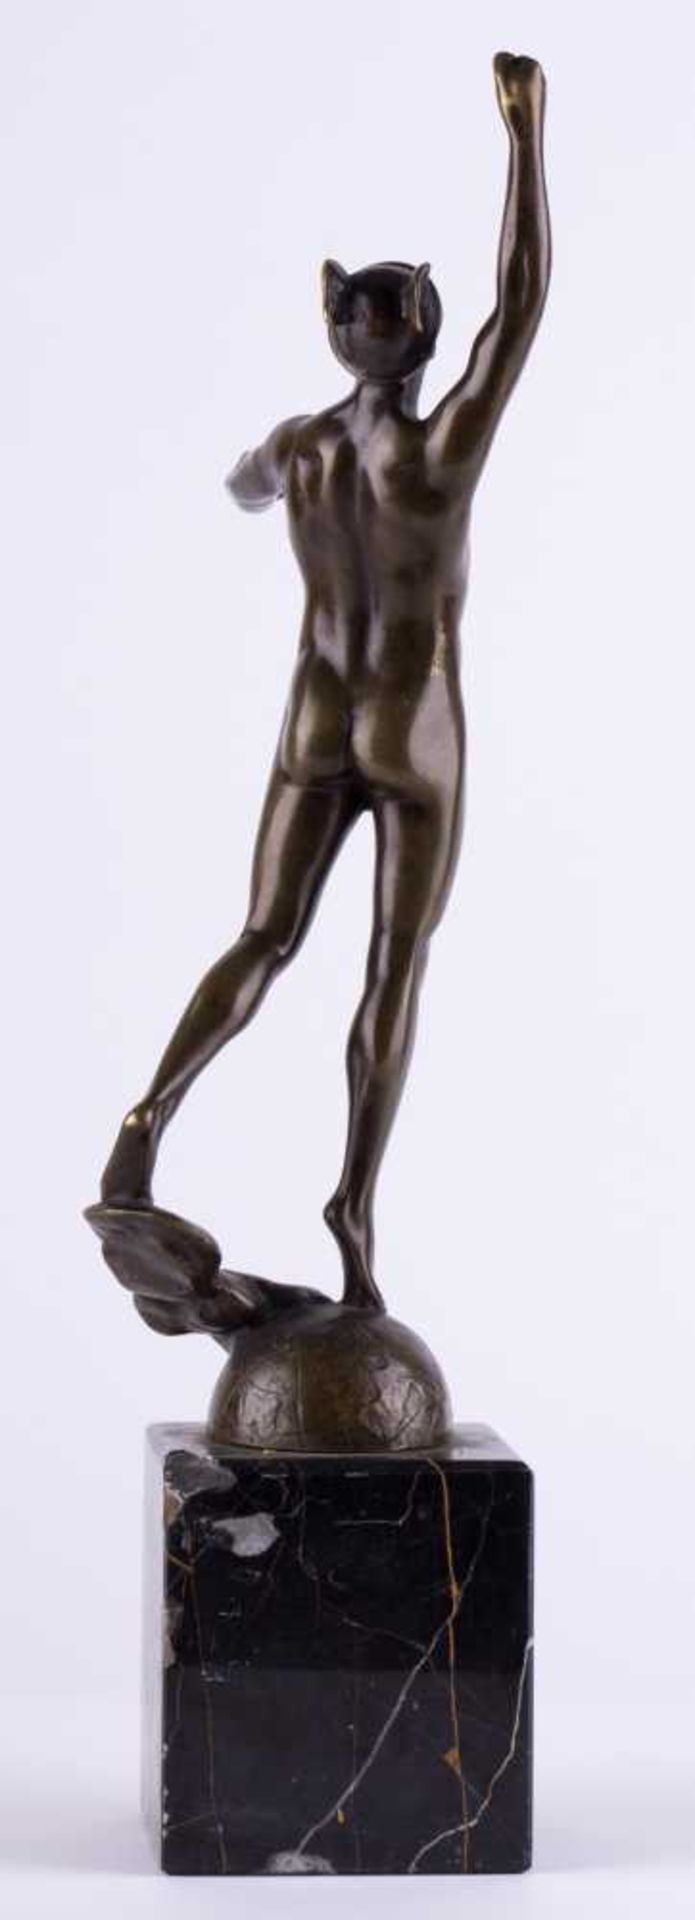 unbekannter Bildhauer des 19./20. Jhd. / Unidentified sculptor, 19th/20th century "Hermes" - Image 3 of 4